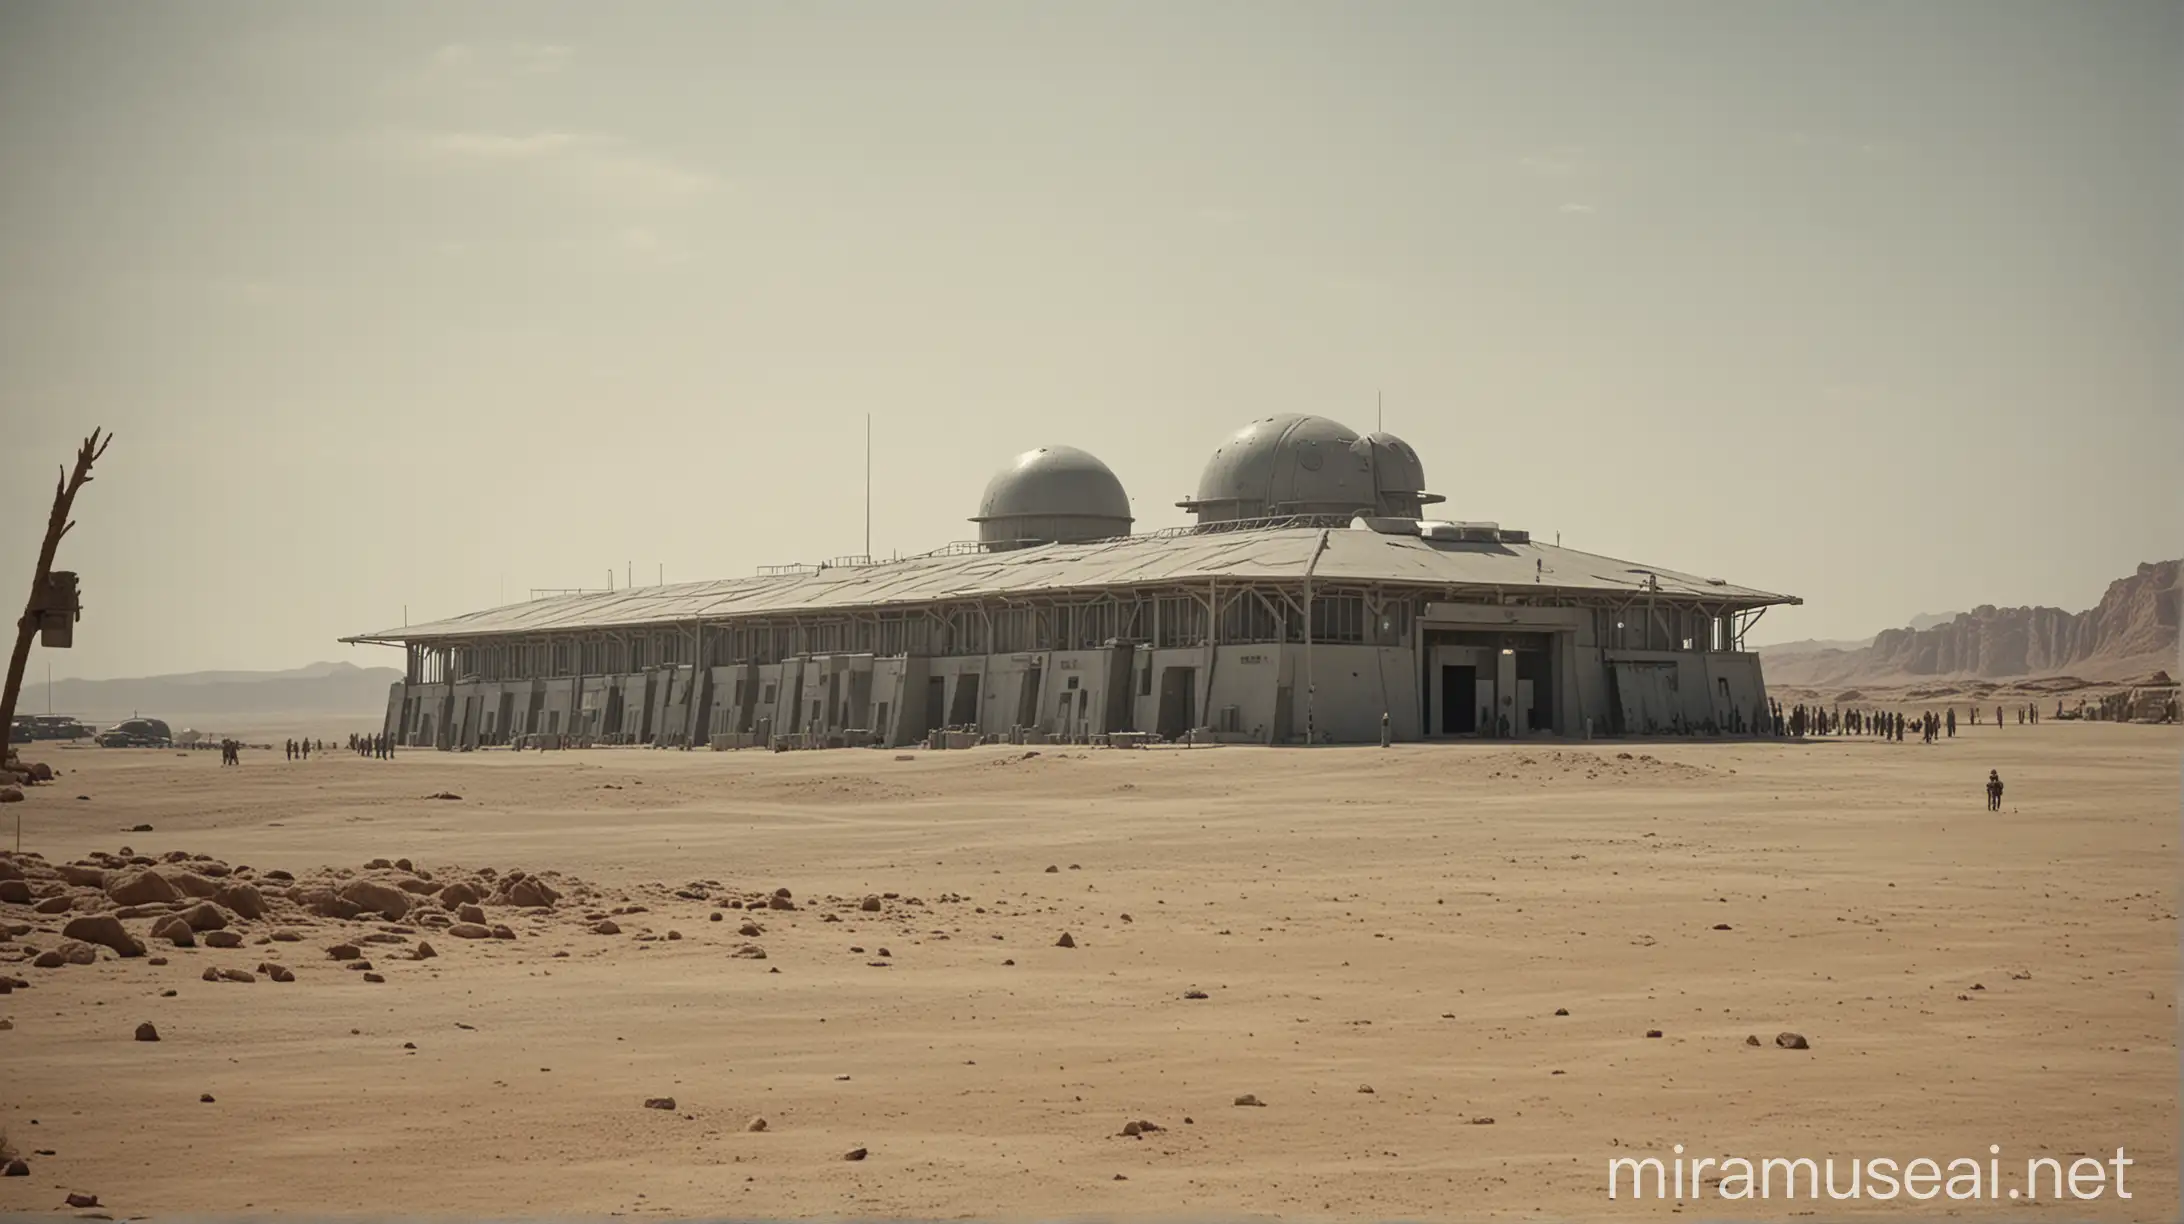 Military Base on Desert Alien Planet under Hot Midday Sun